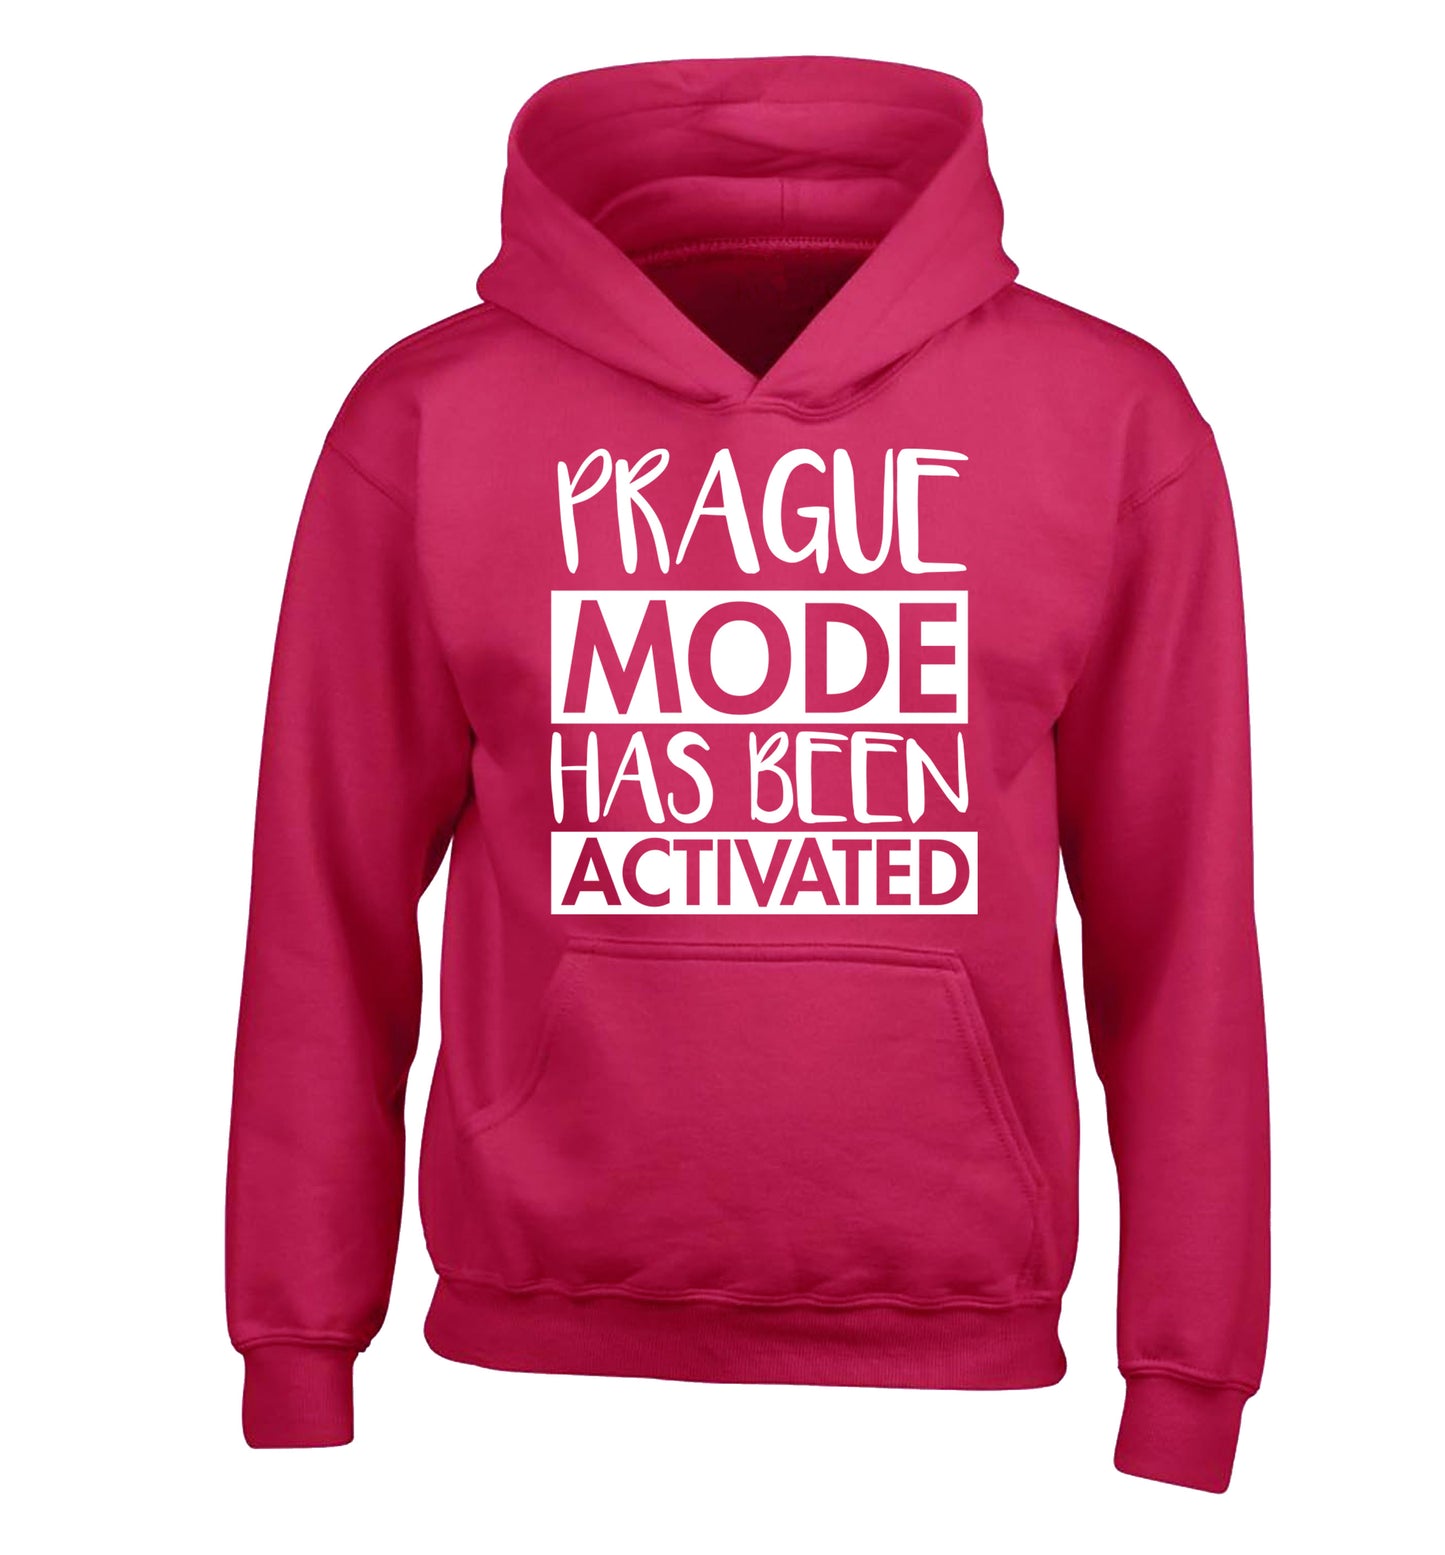 Prague mode has been activated children's pink hoodie 12-13 Years